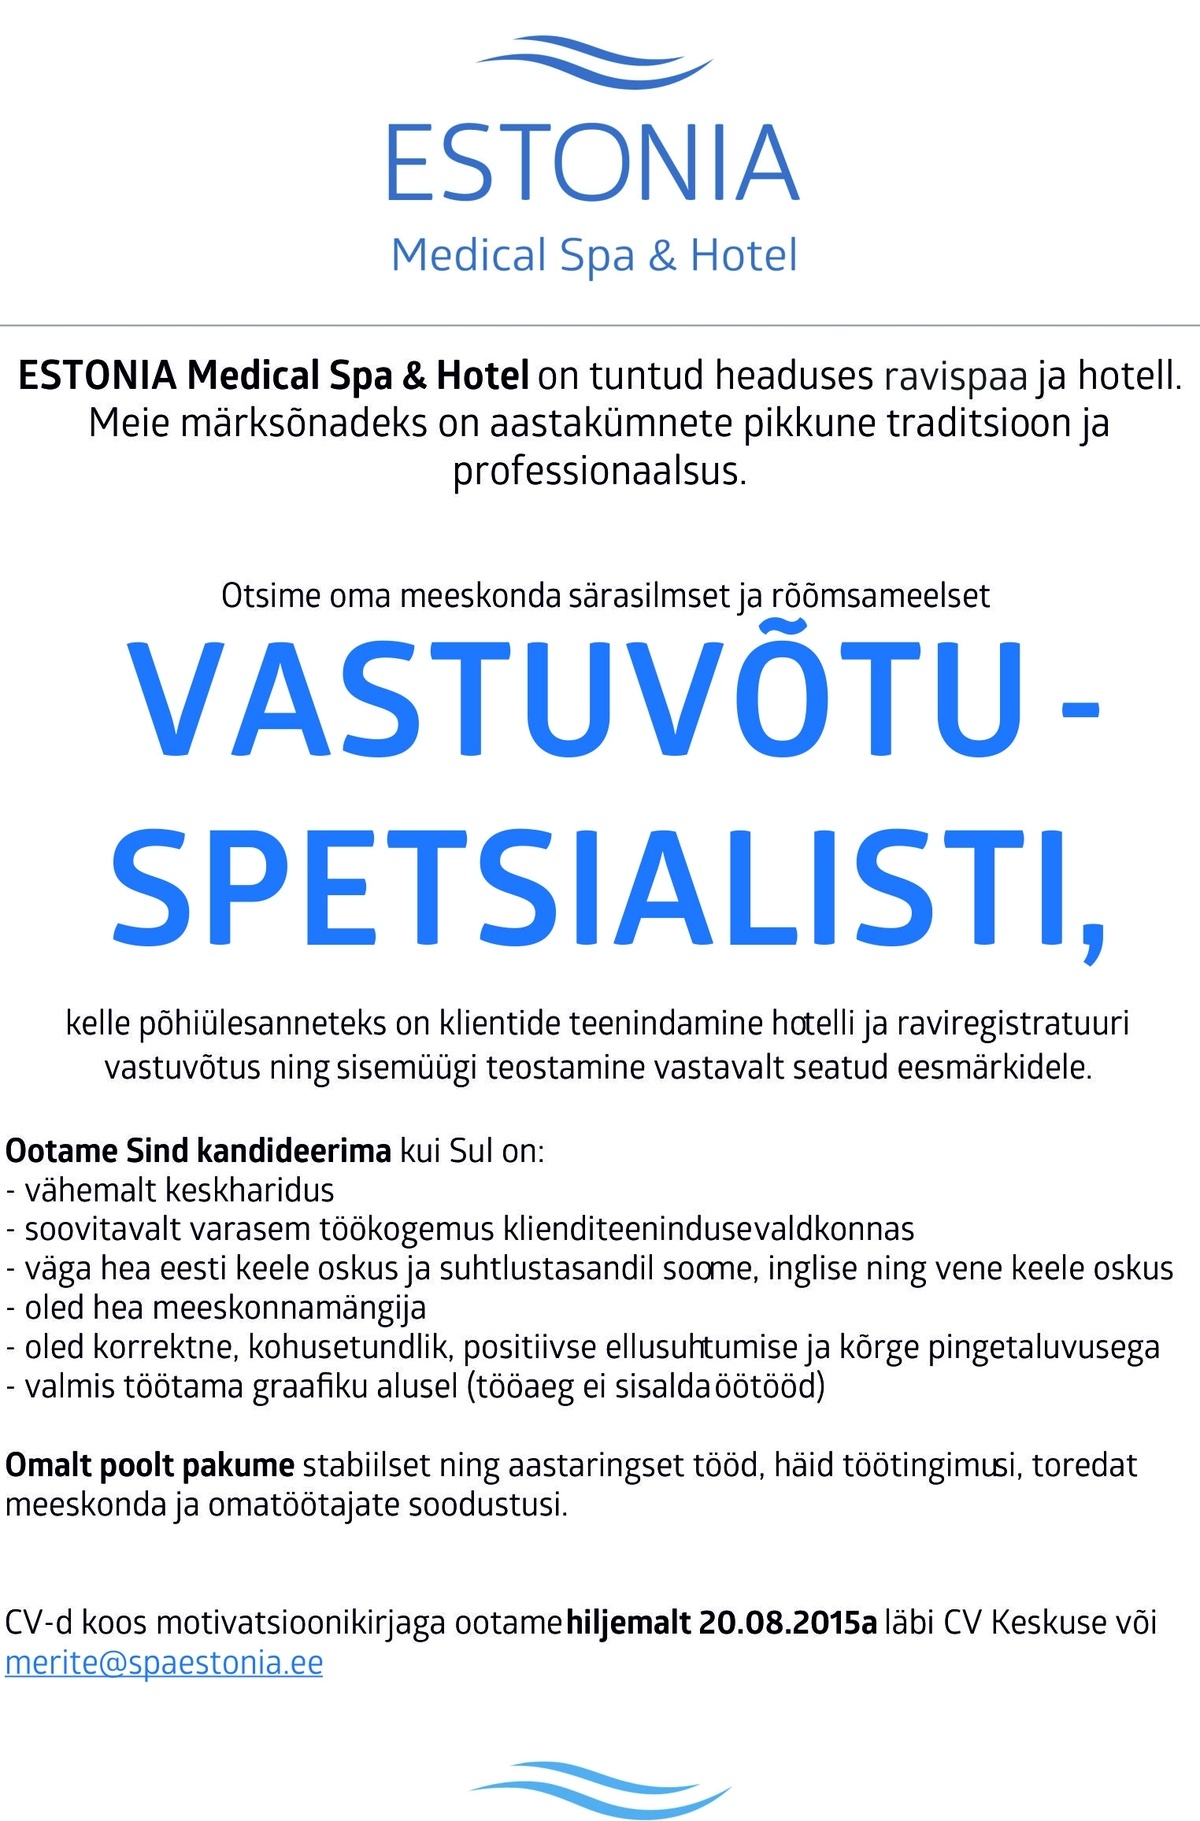 Estonia Spa Hotels AS Vastuvõtuspetsialist